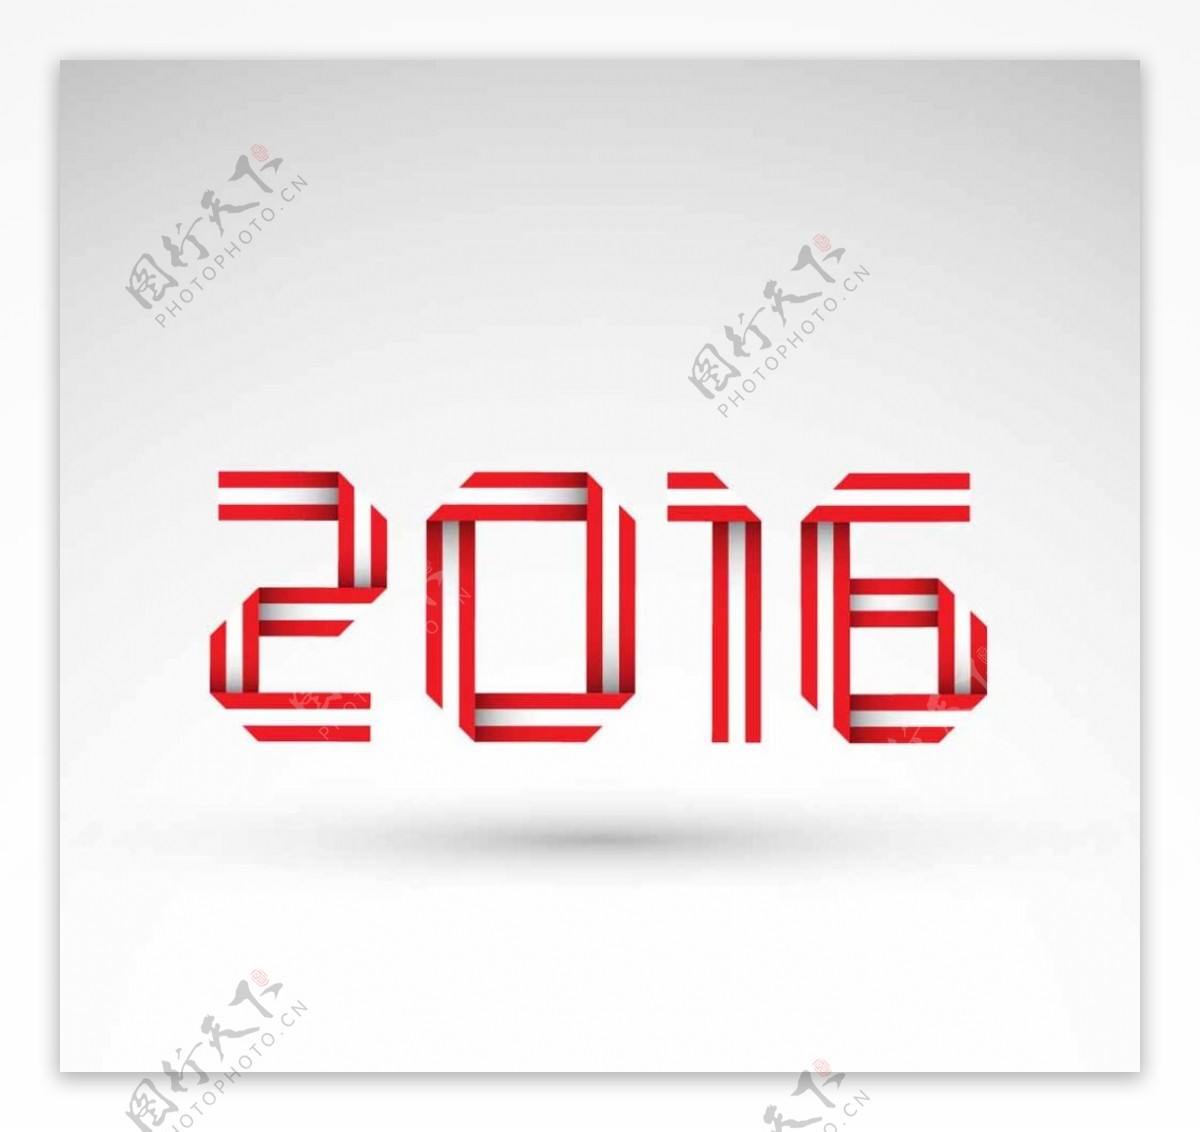 2016年红色色调字体